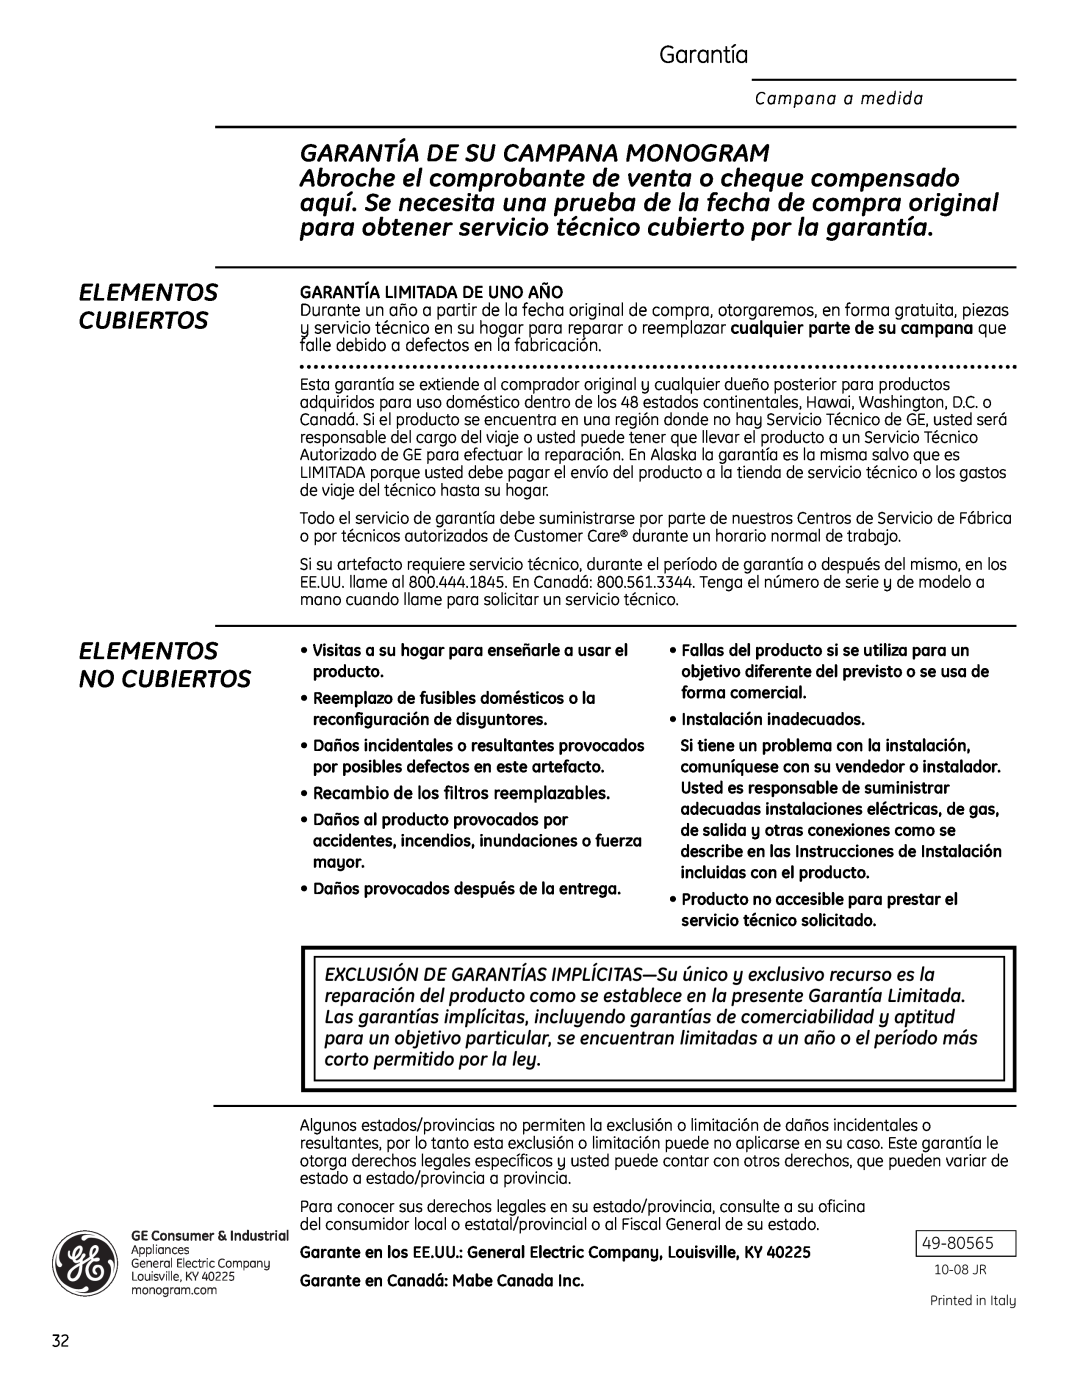 GE ZVC48LSS Garantía De Su Campana Monogram, Elementos Cubiertos, Elementos No Cubiertos, Garantía Limitada De Uno Año 